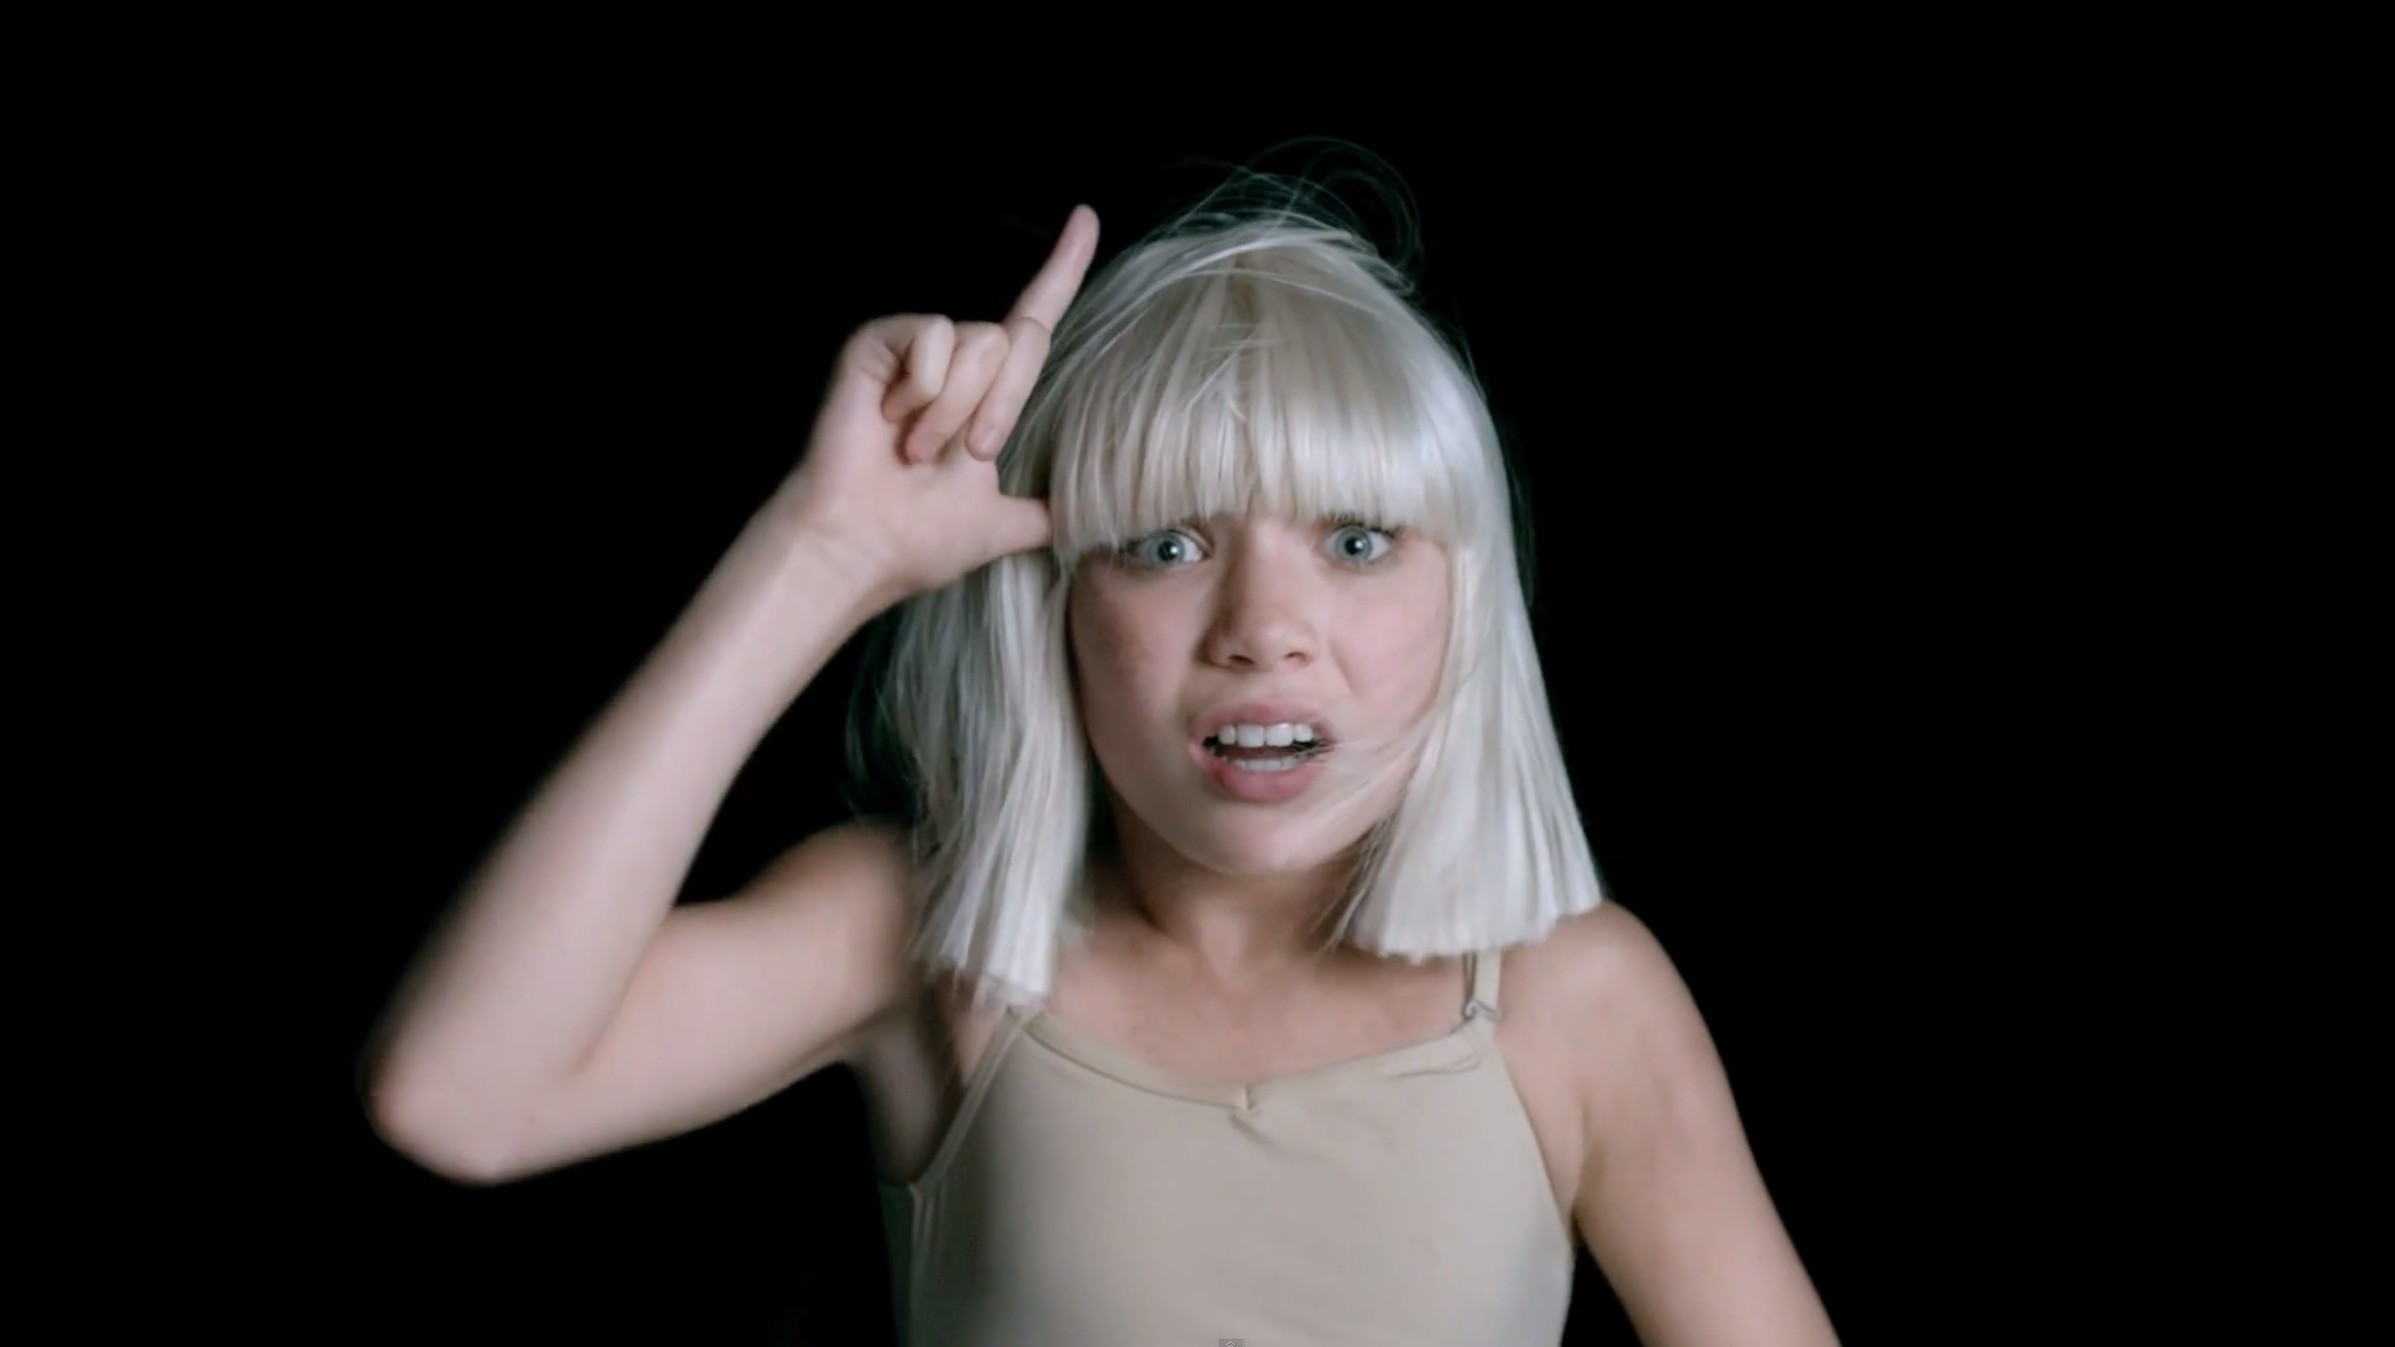 Sia Xxx - Sia Big Girls Cry Video - Maddie Ziegler Sia | Marie Claire